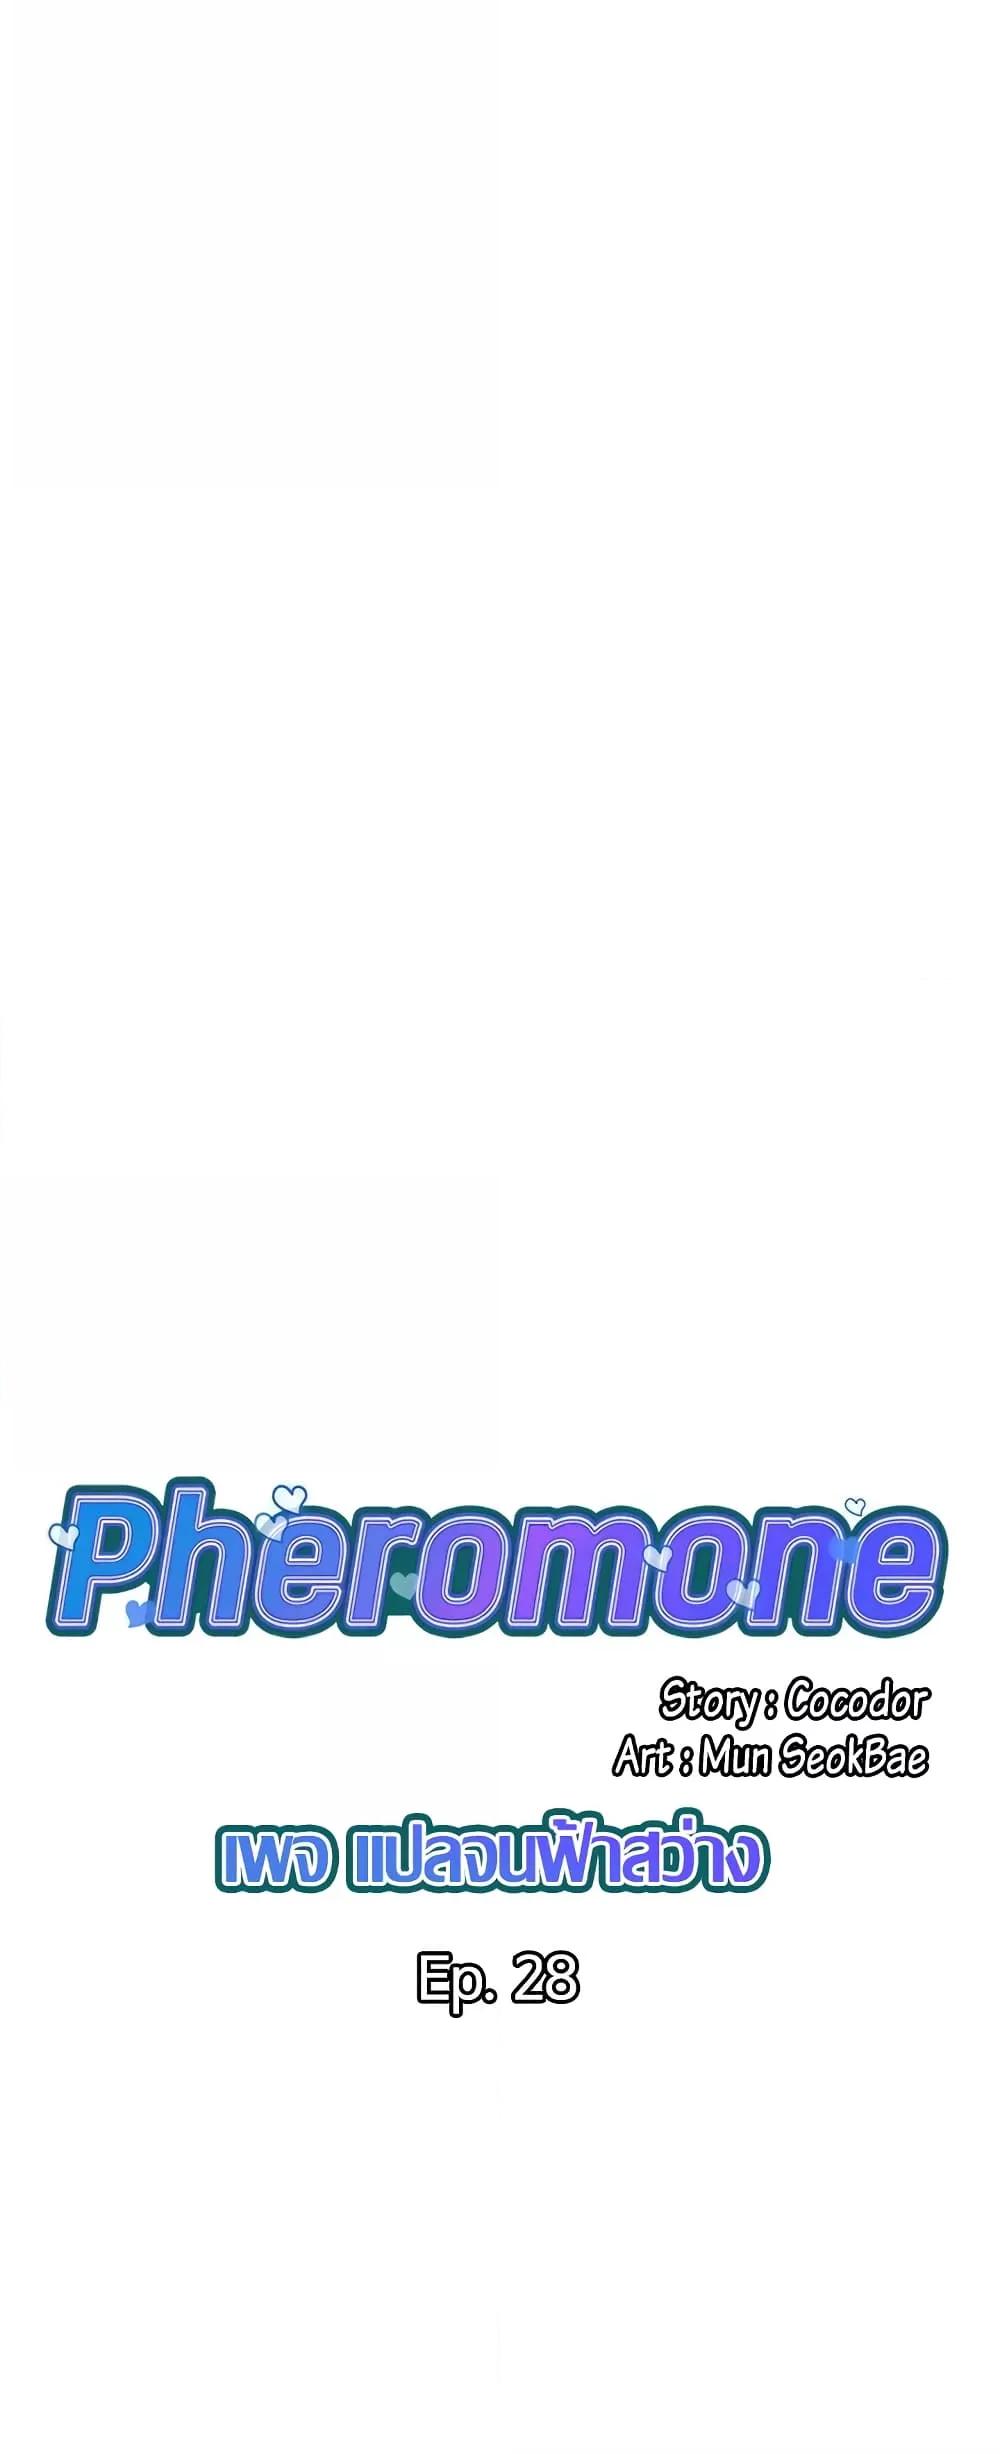 Pheromones 28 02